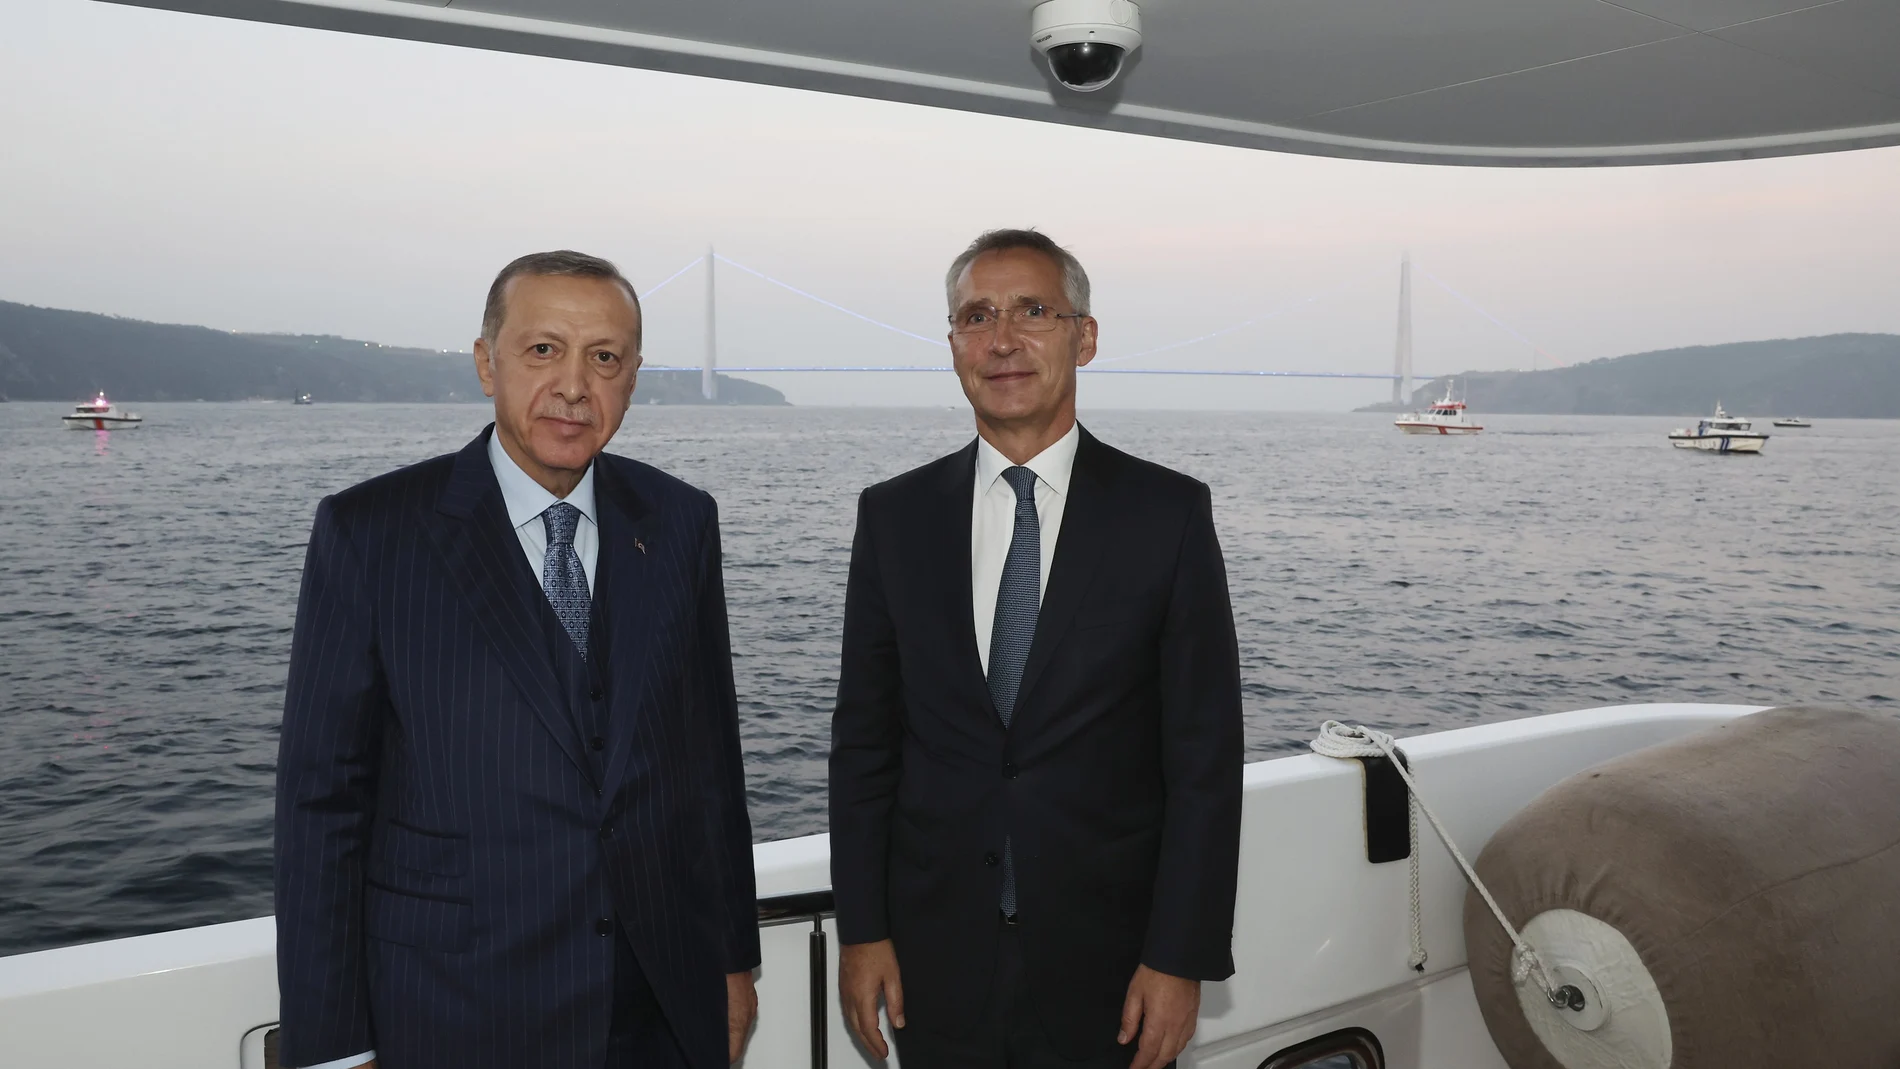 El presidente turco, Recep Tayyip Erdogan, y el secretario general de la OTAN, Jens Stoltenberg, el viernes en el Bósforo